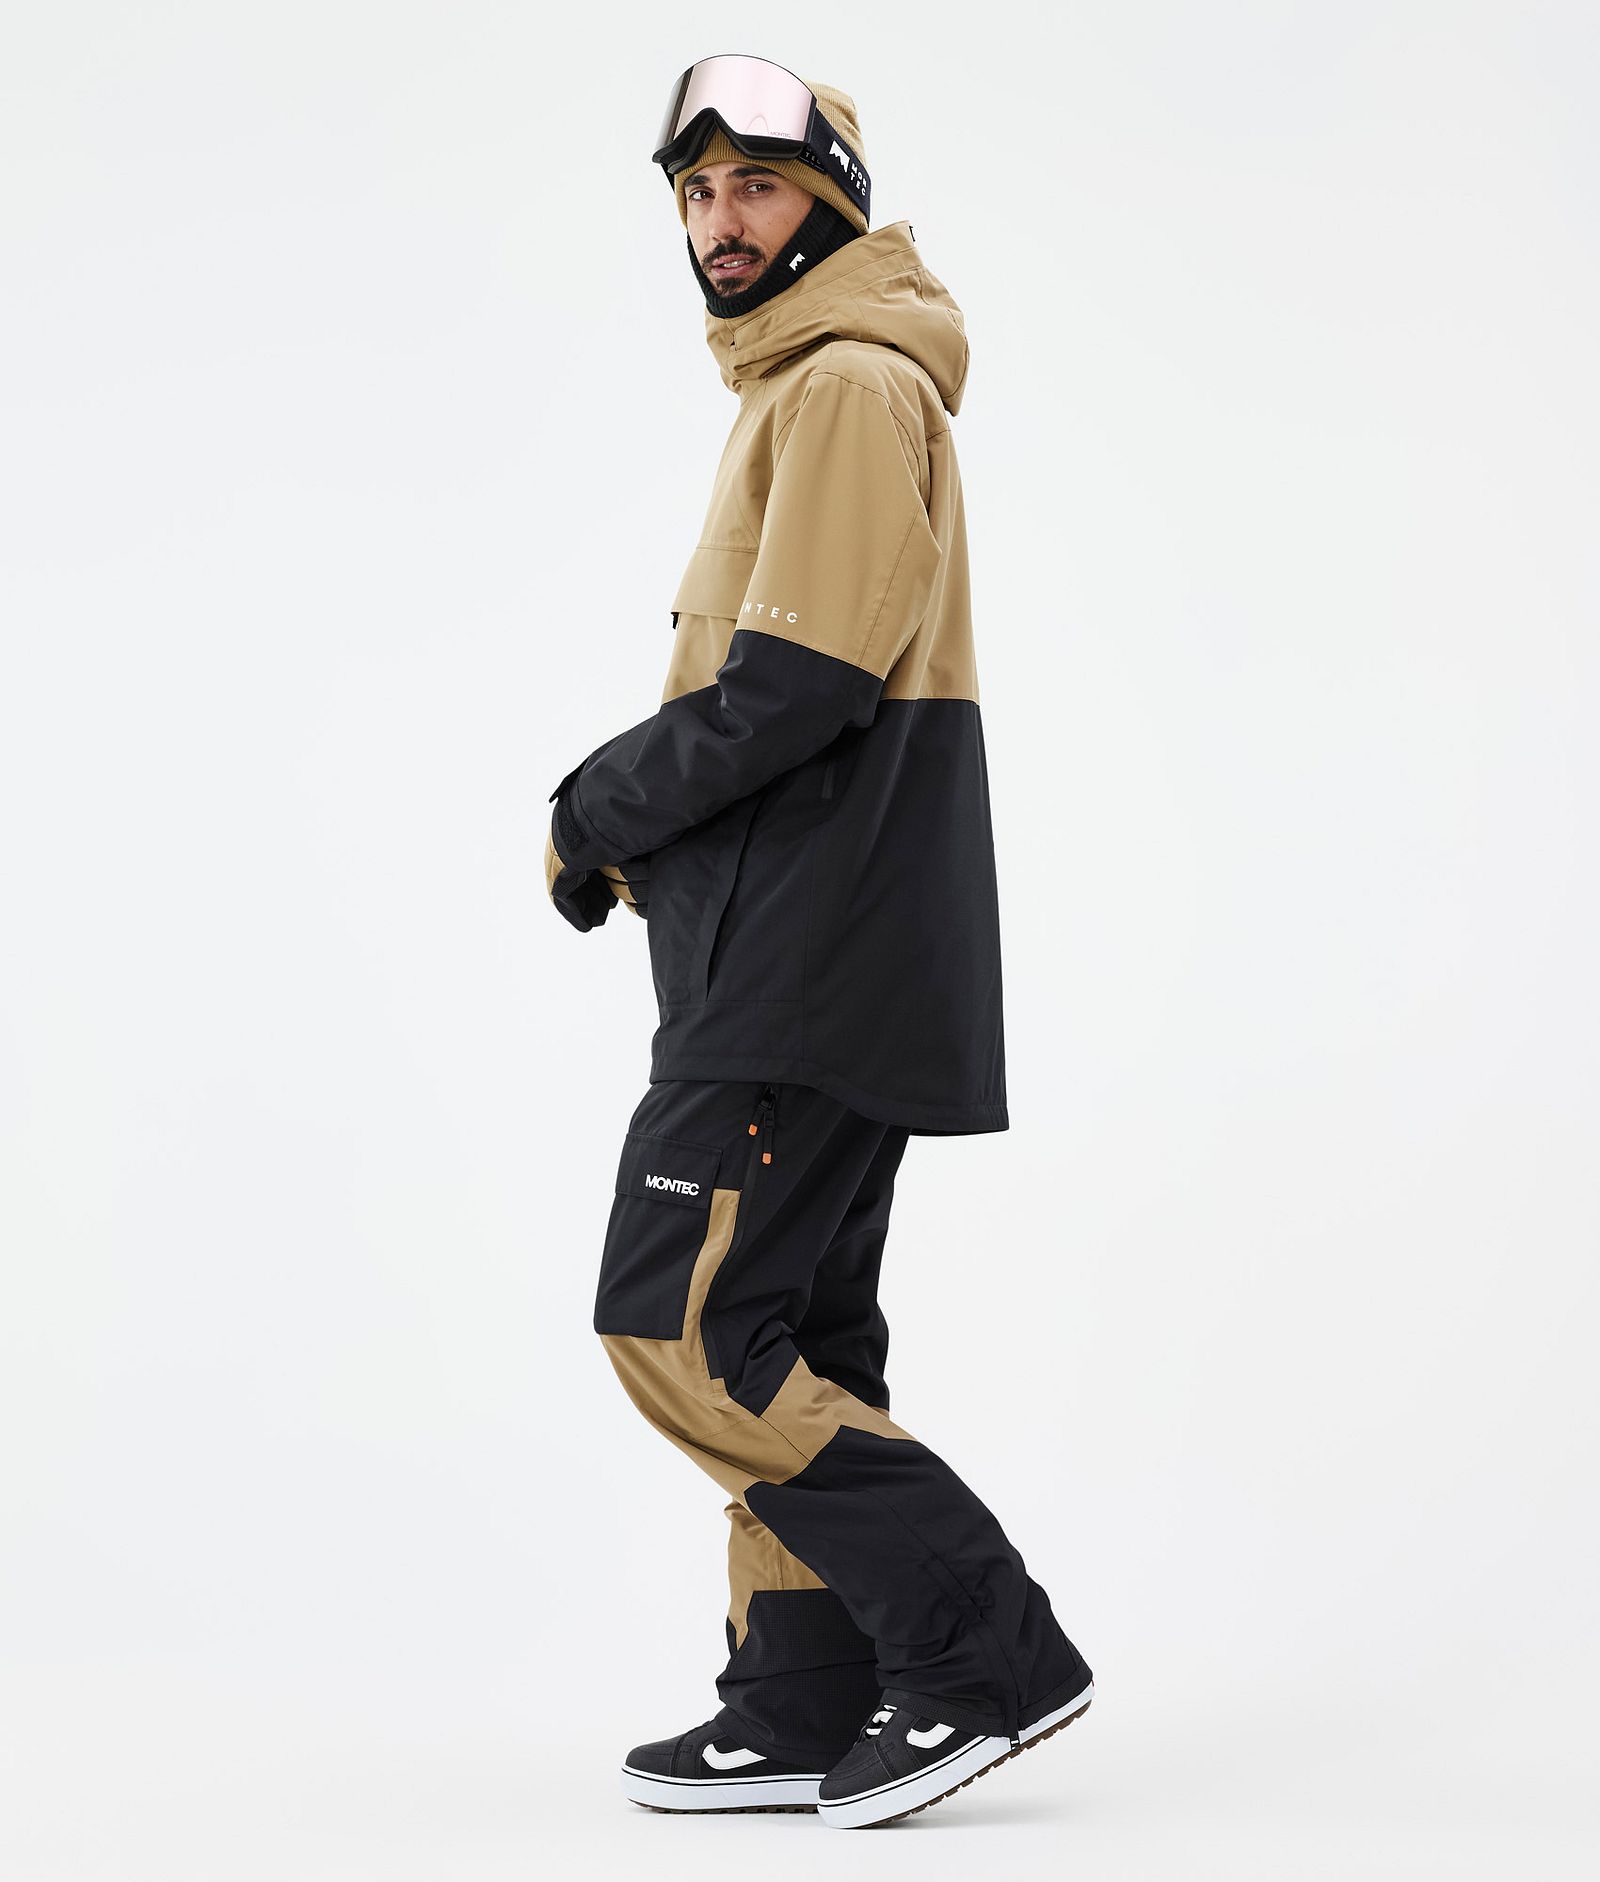 Dune Snowboard Jacket Men Gold/Black, Image 4 of 9